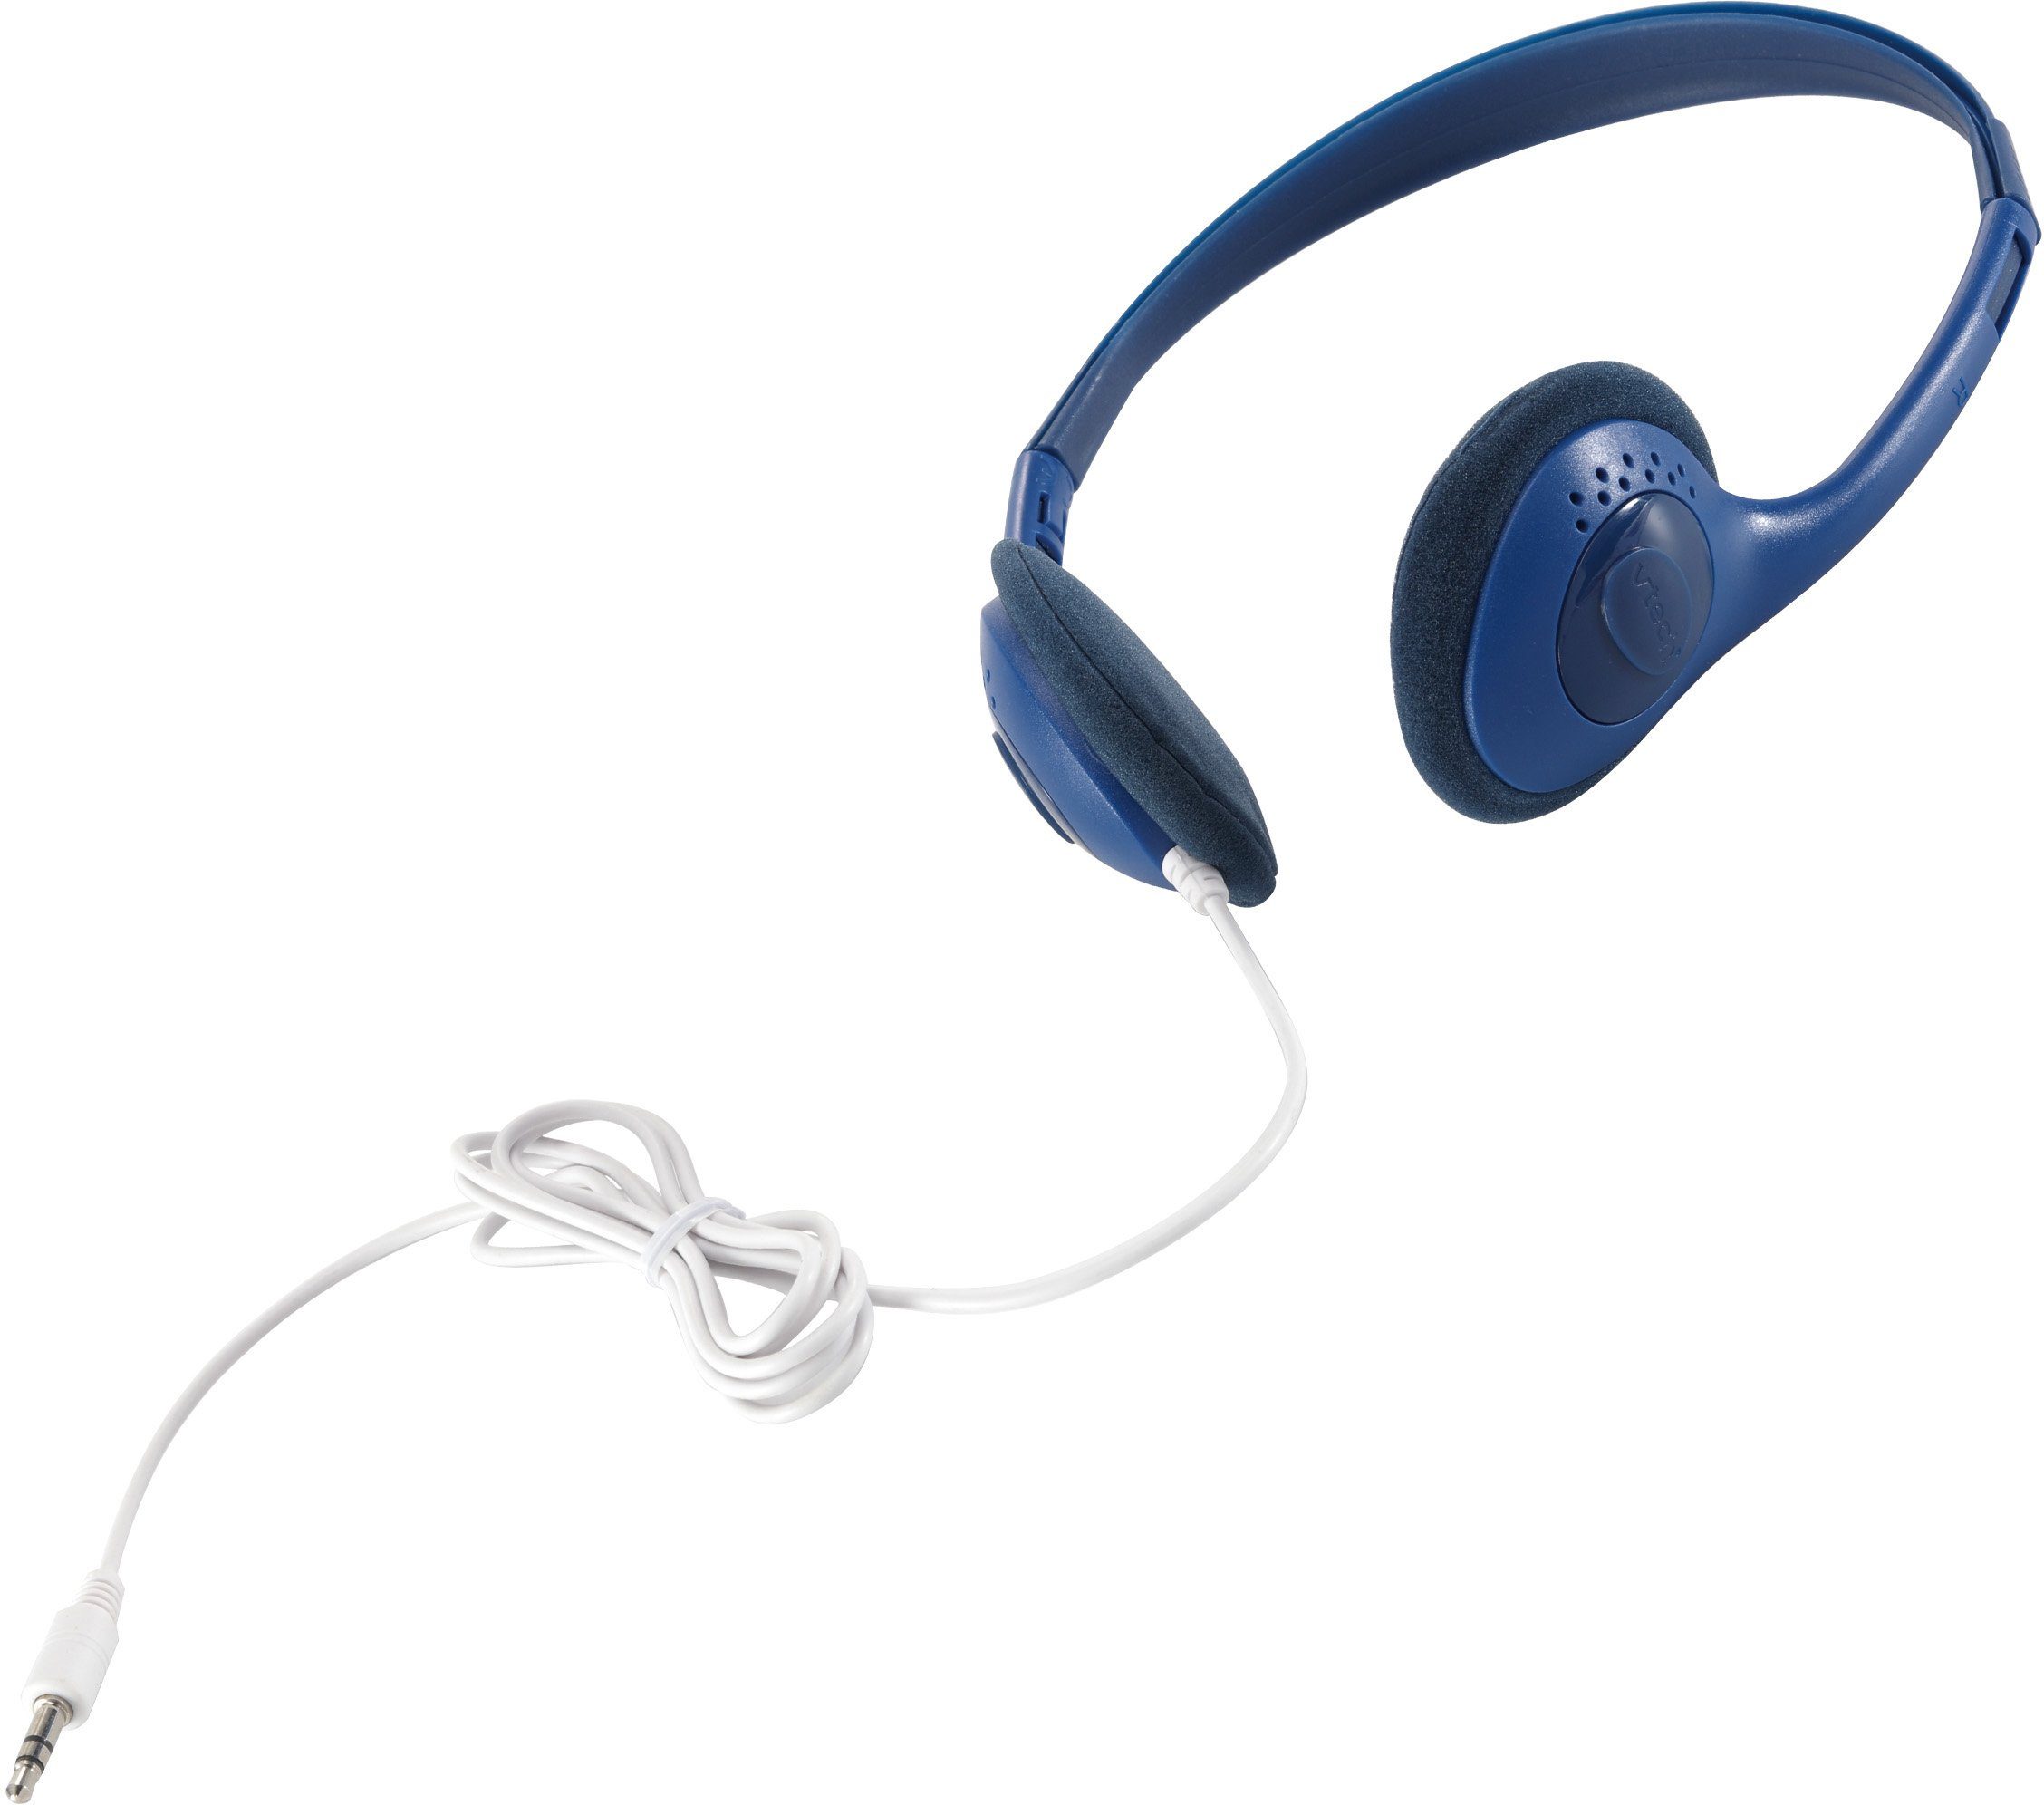 Vtech® KidiZoom Duo Pro Kinderkamera blau Kopfhörer) (inkluisve